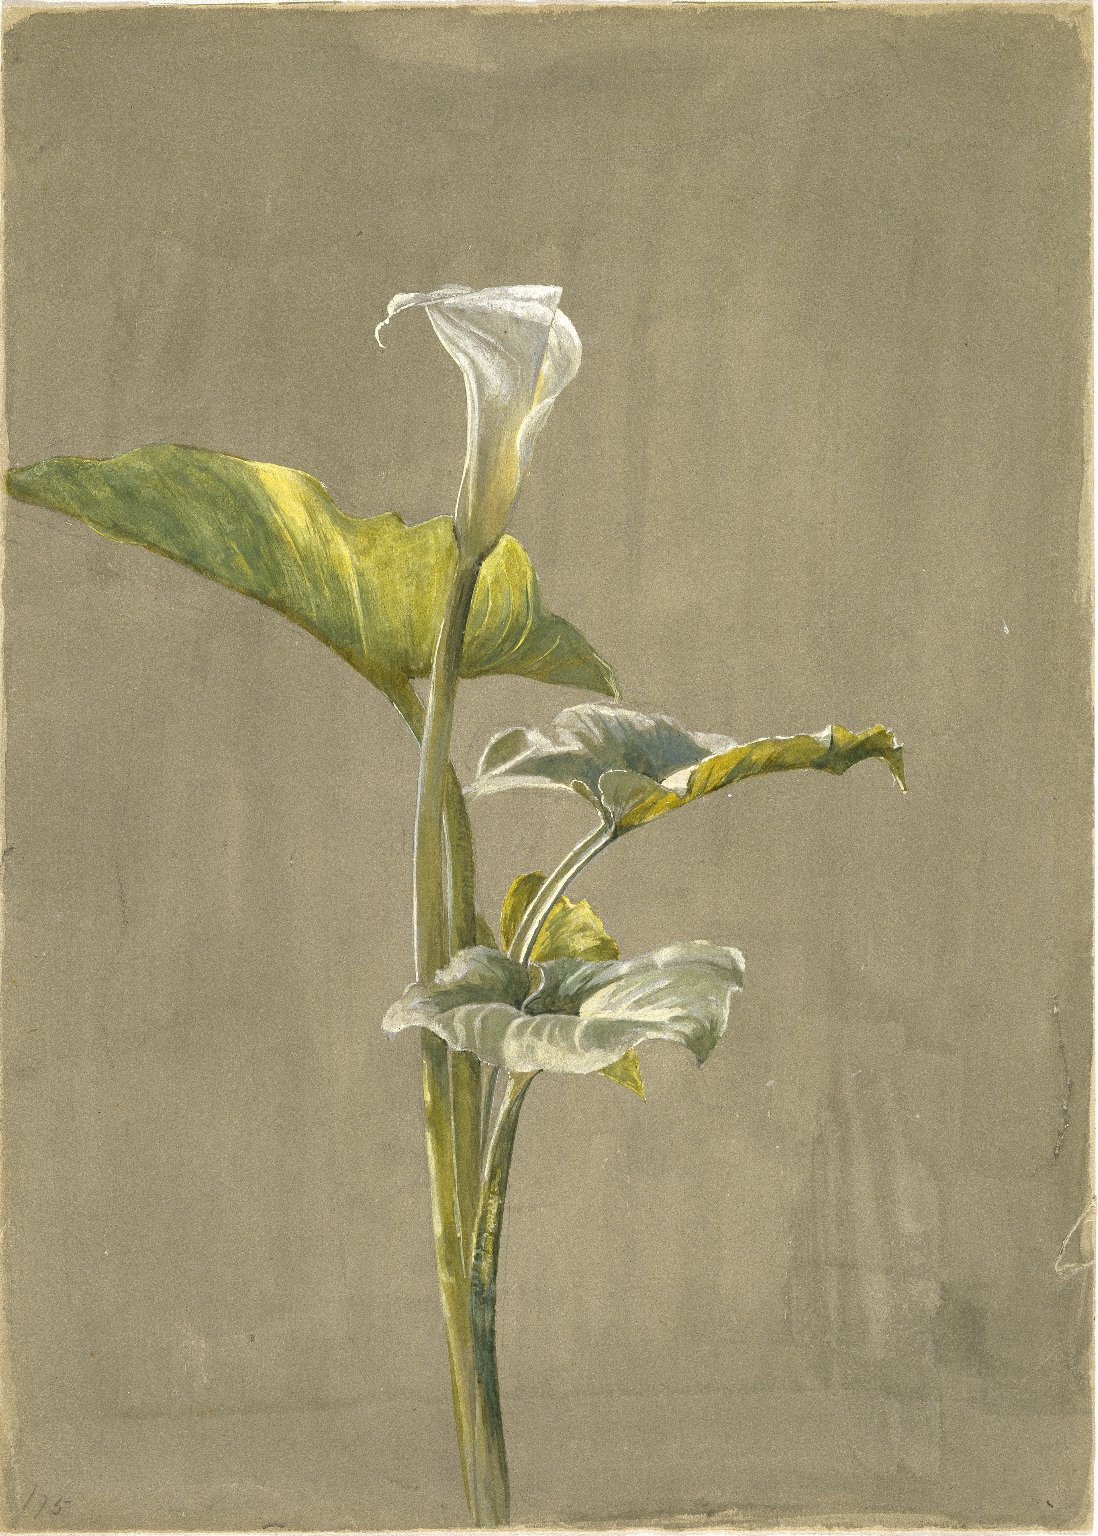 Zambak (orig. "Calla Lily") by Fidelia Bridges - 1875 - 35,6 x 24,5 cm 